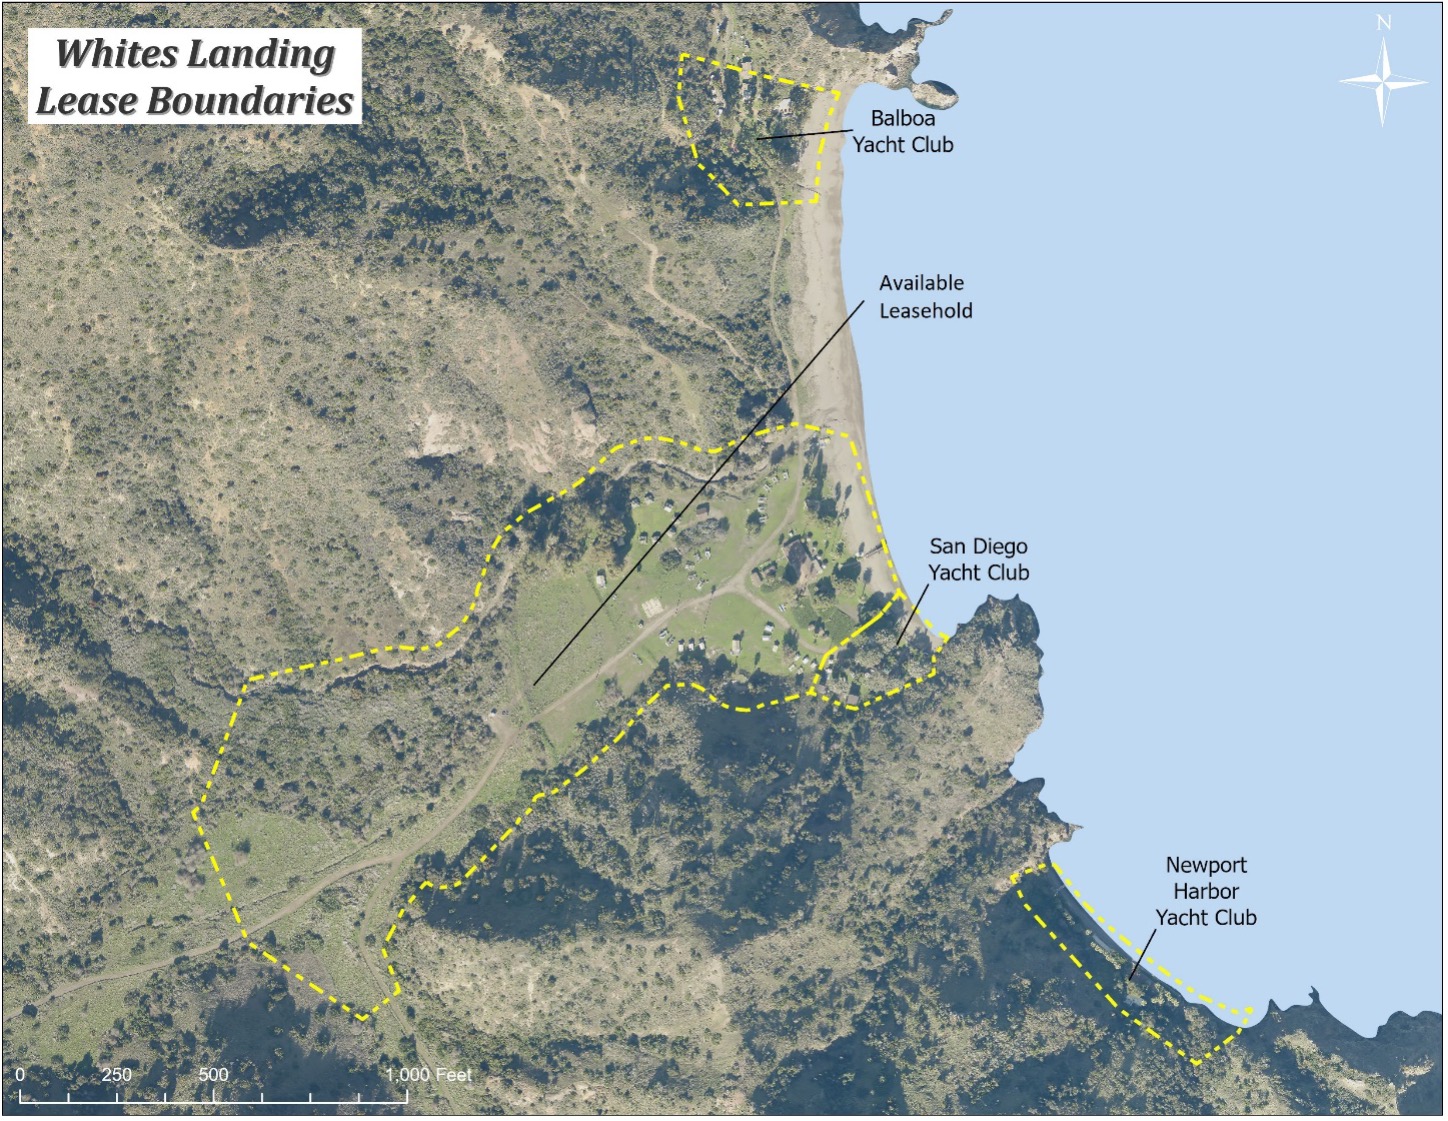 Catalina Island White's Landing boundary